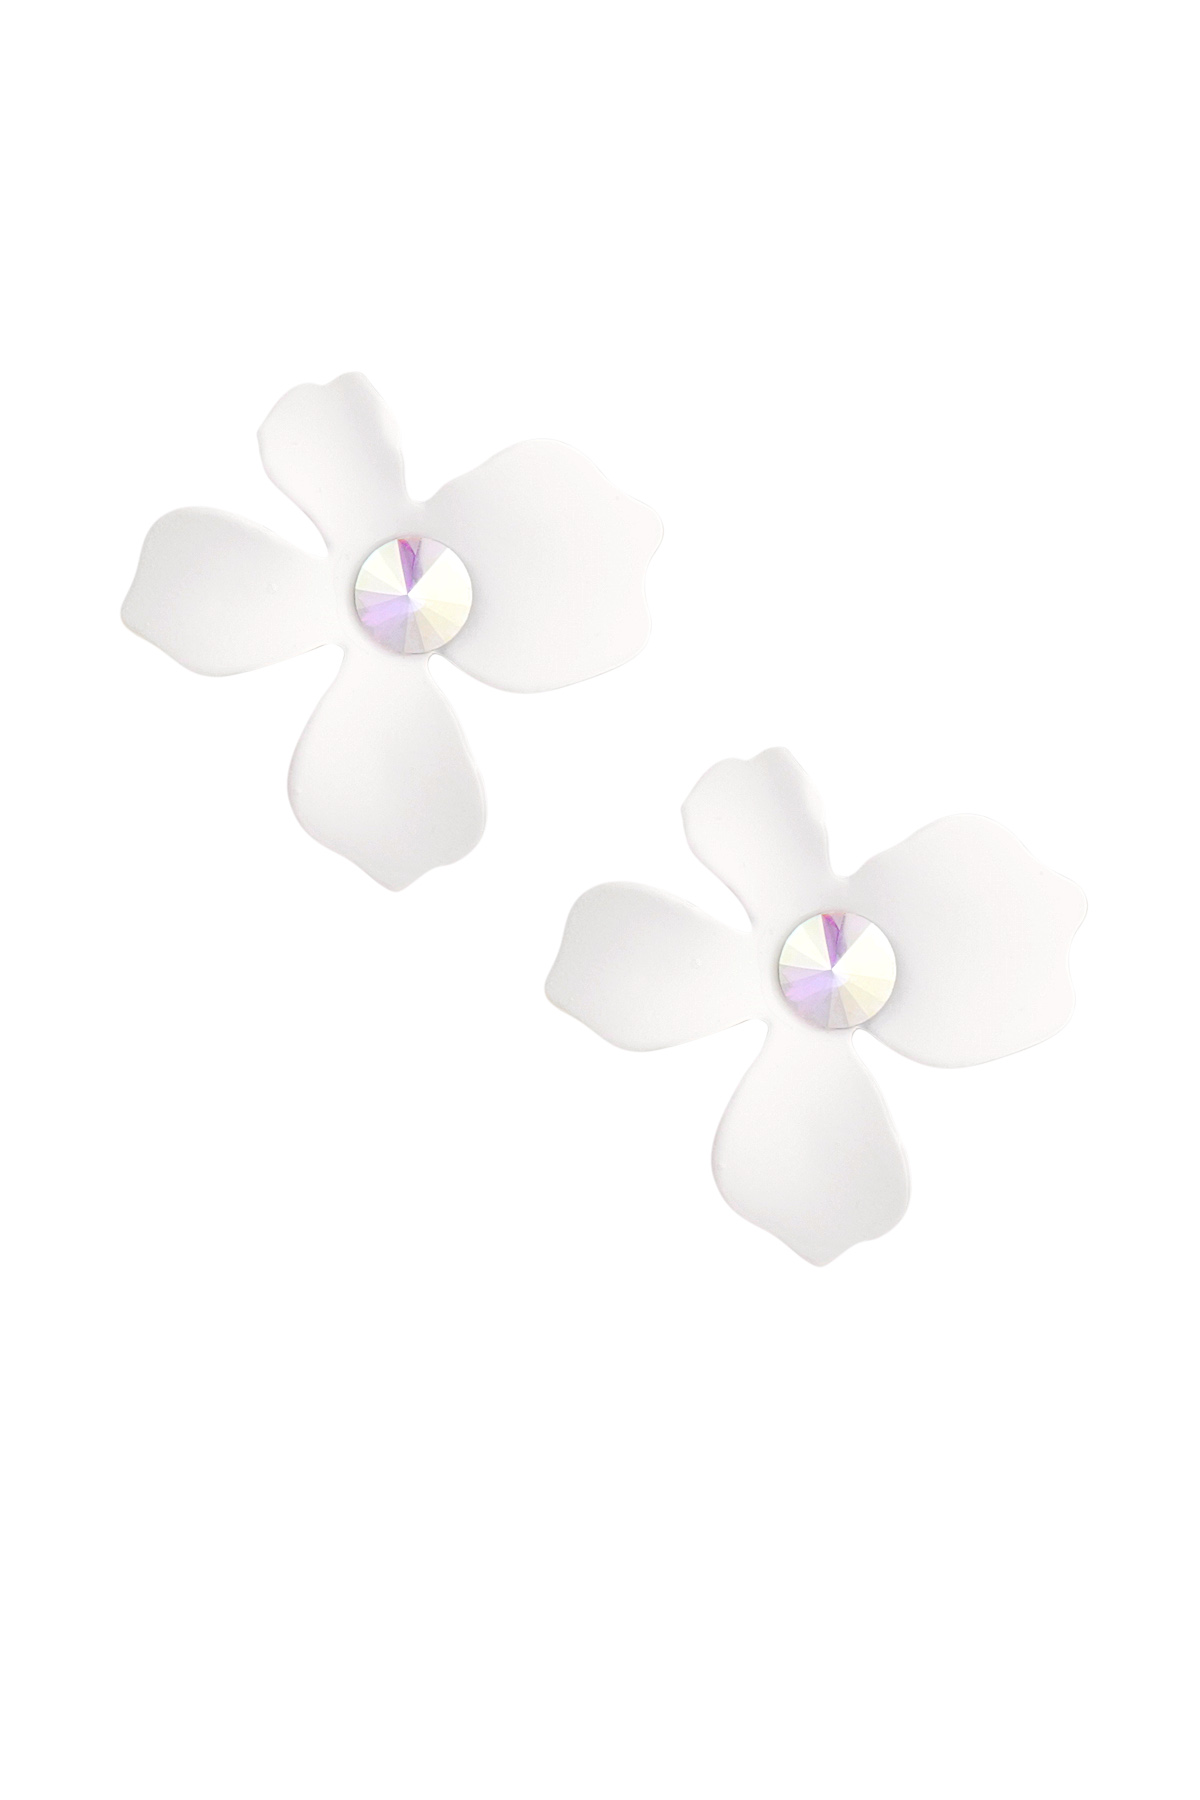 Summer flower earrings - white h5 